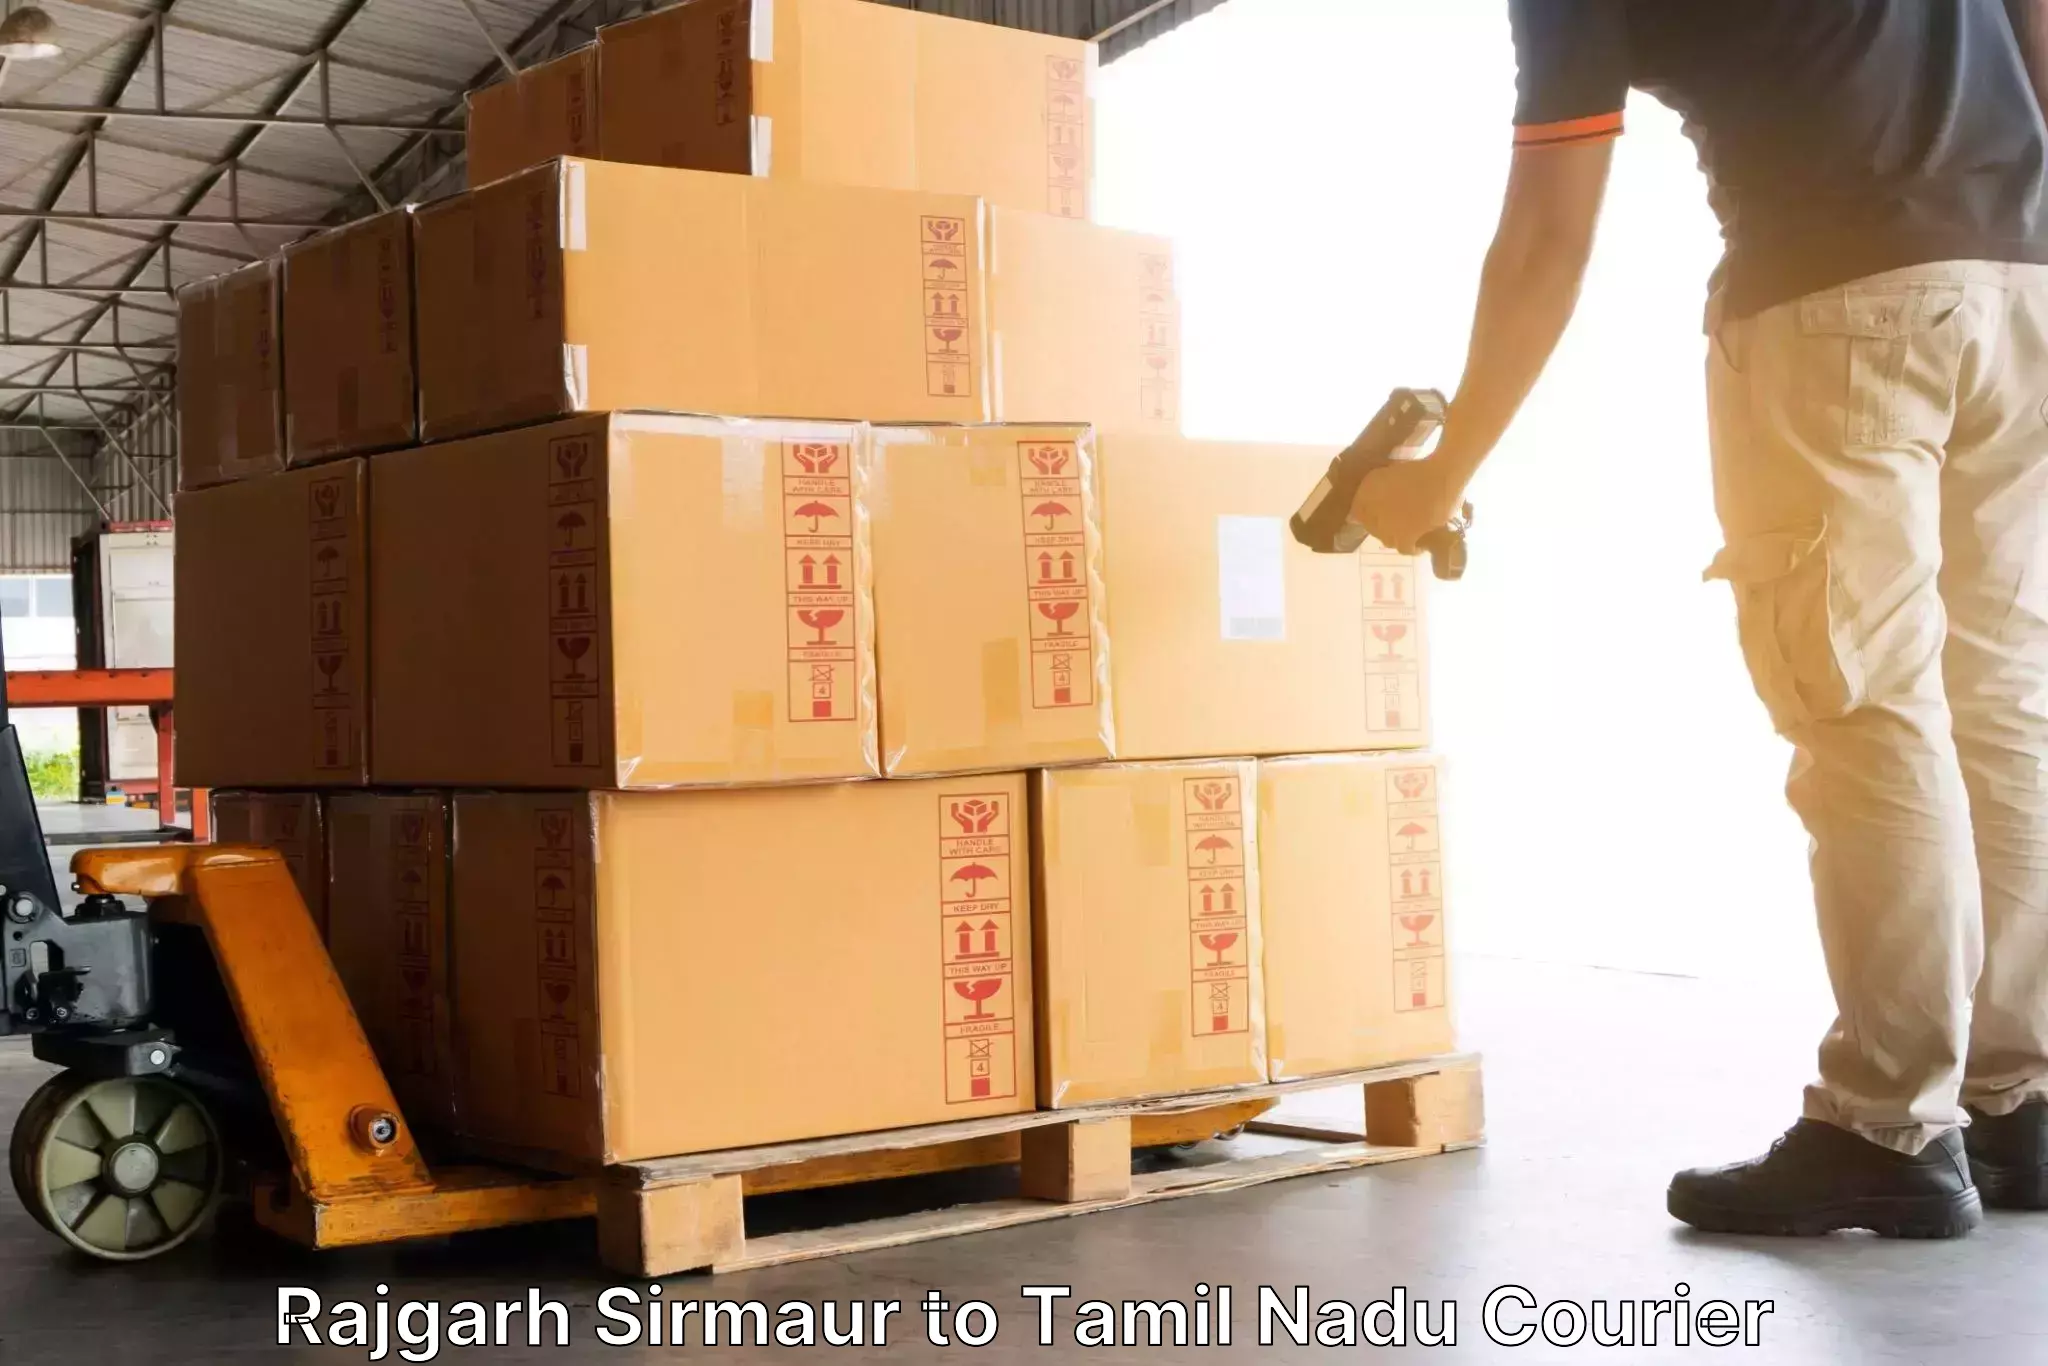 Express logistics service Rajgarh Sirmaur to Tamil Nadu